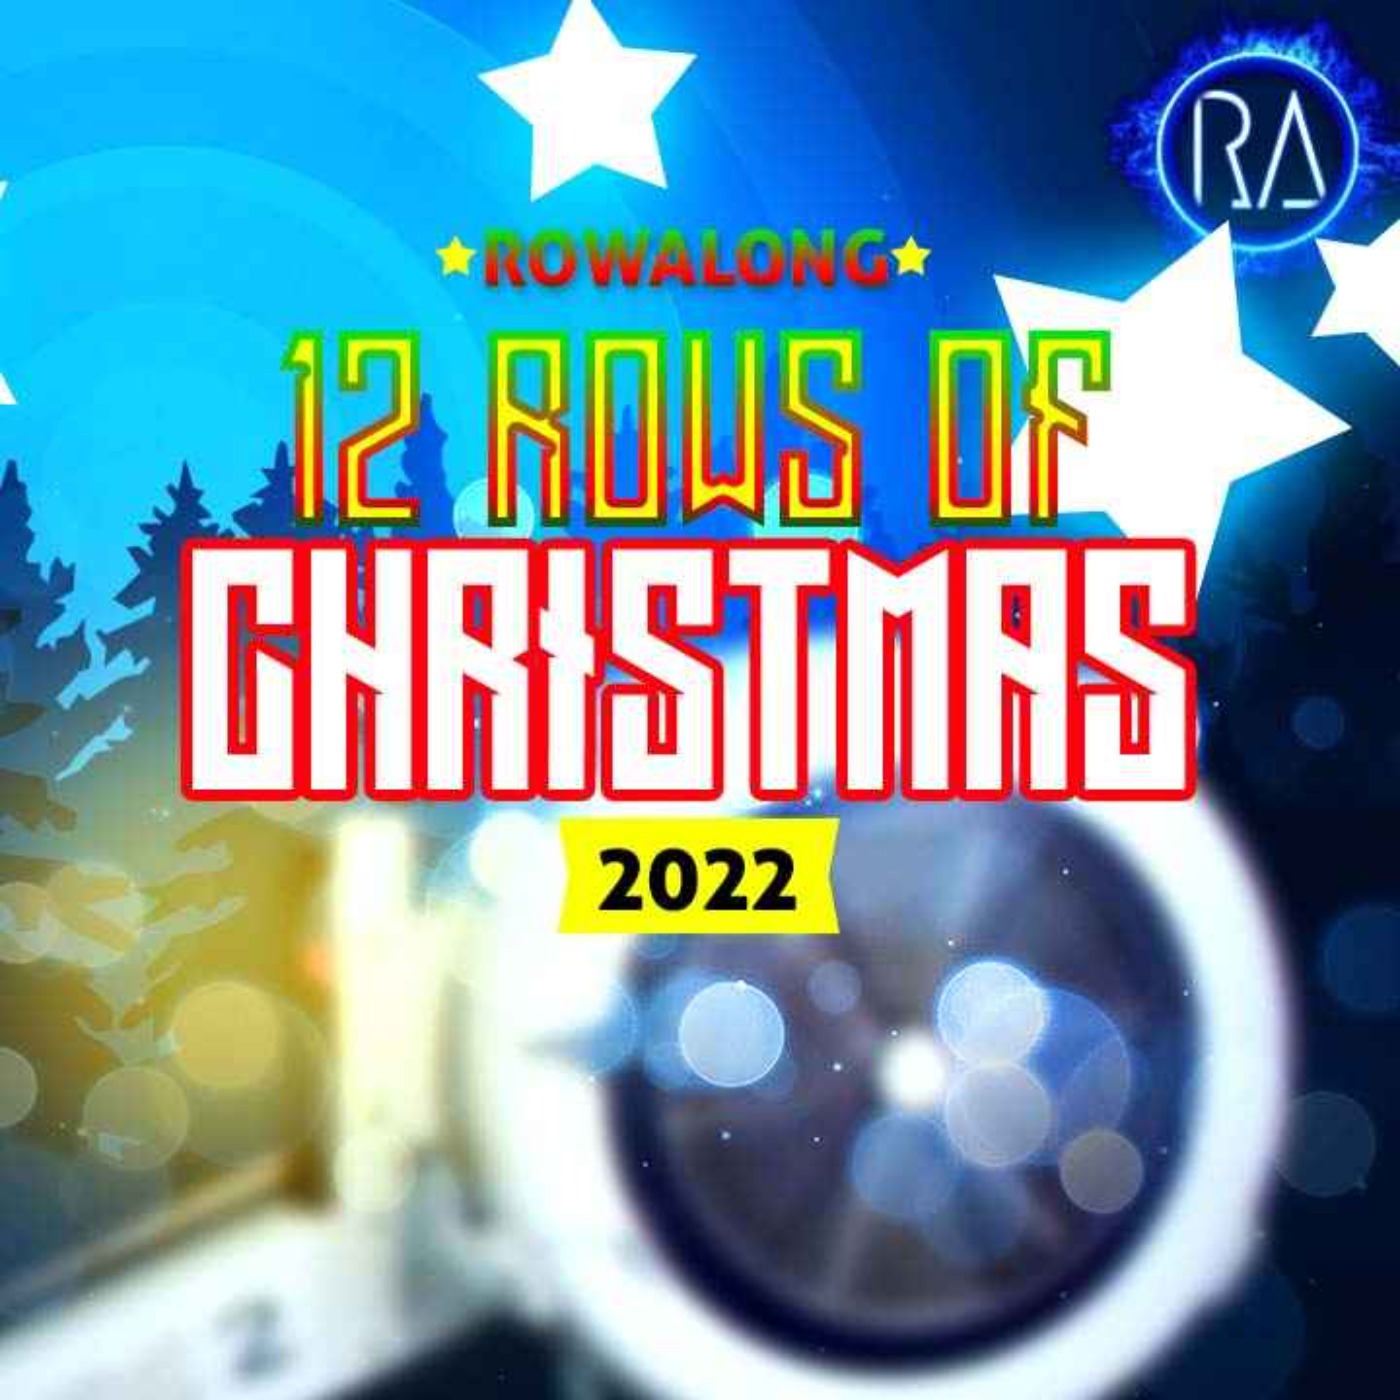 12 Rows of Christmas RowAlongs - 3 TABATAs